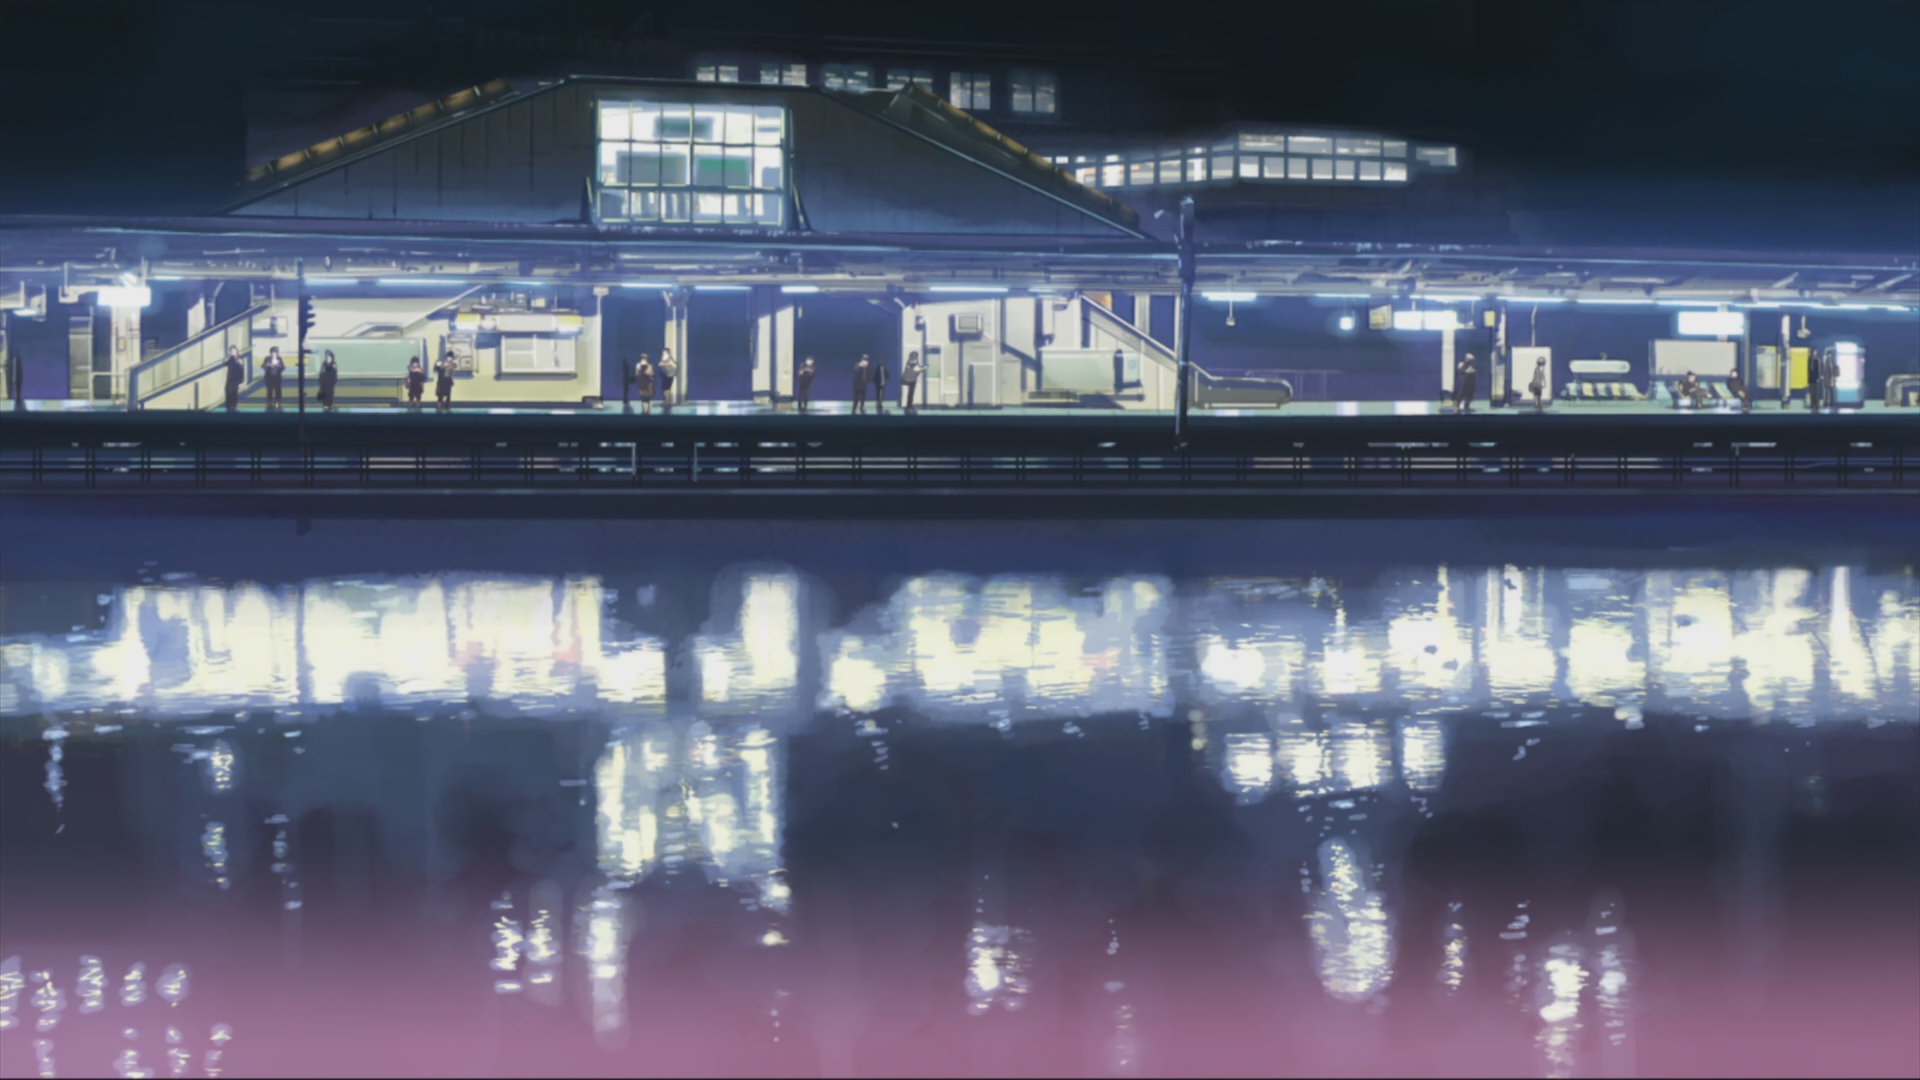 Макото Синкай, вокзалы, 5 сантиметров в секунду, произведение искусства, аниме, отражения - обои на рабочий стол